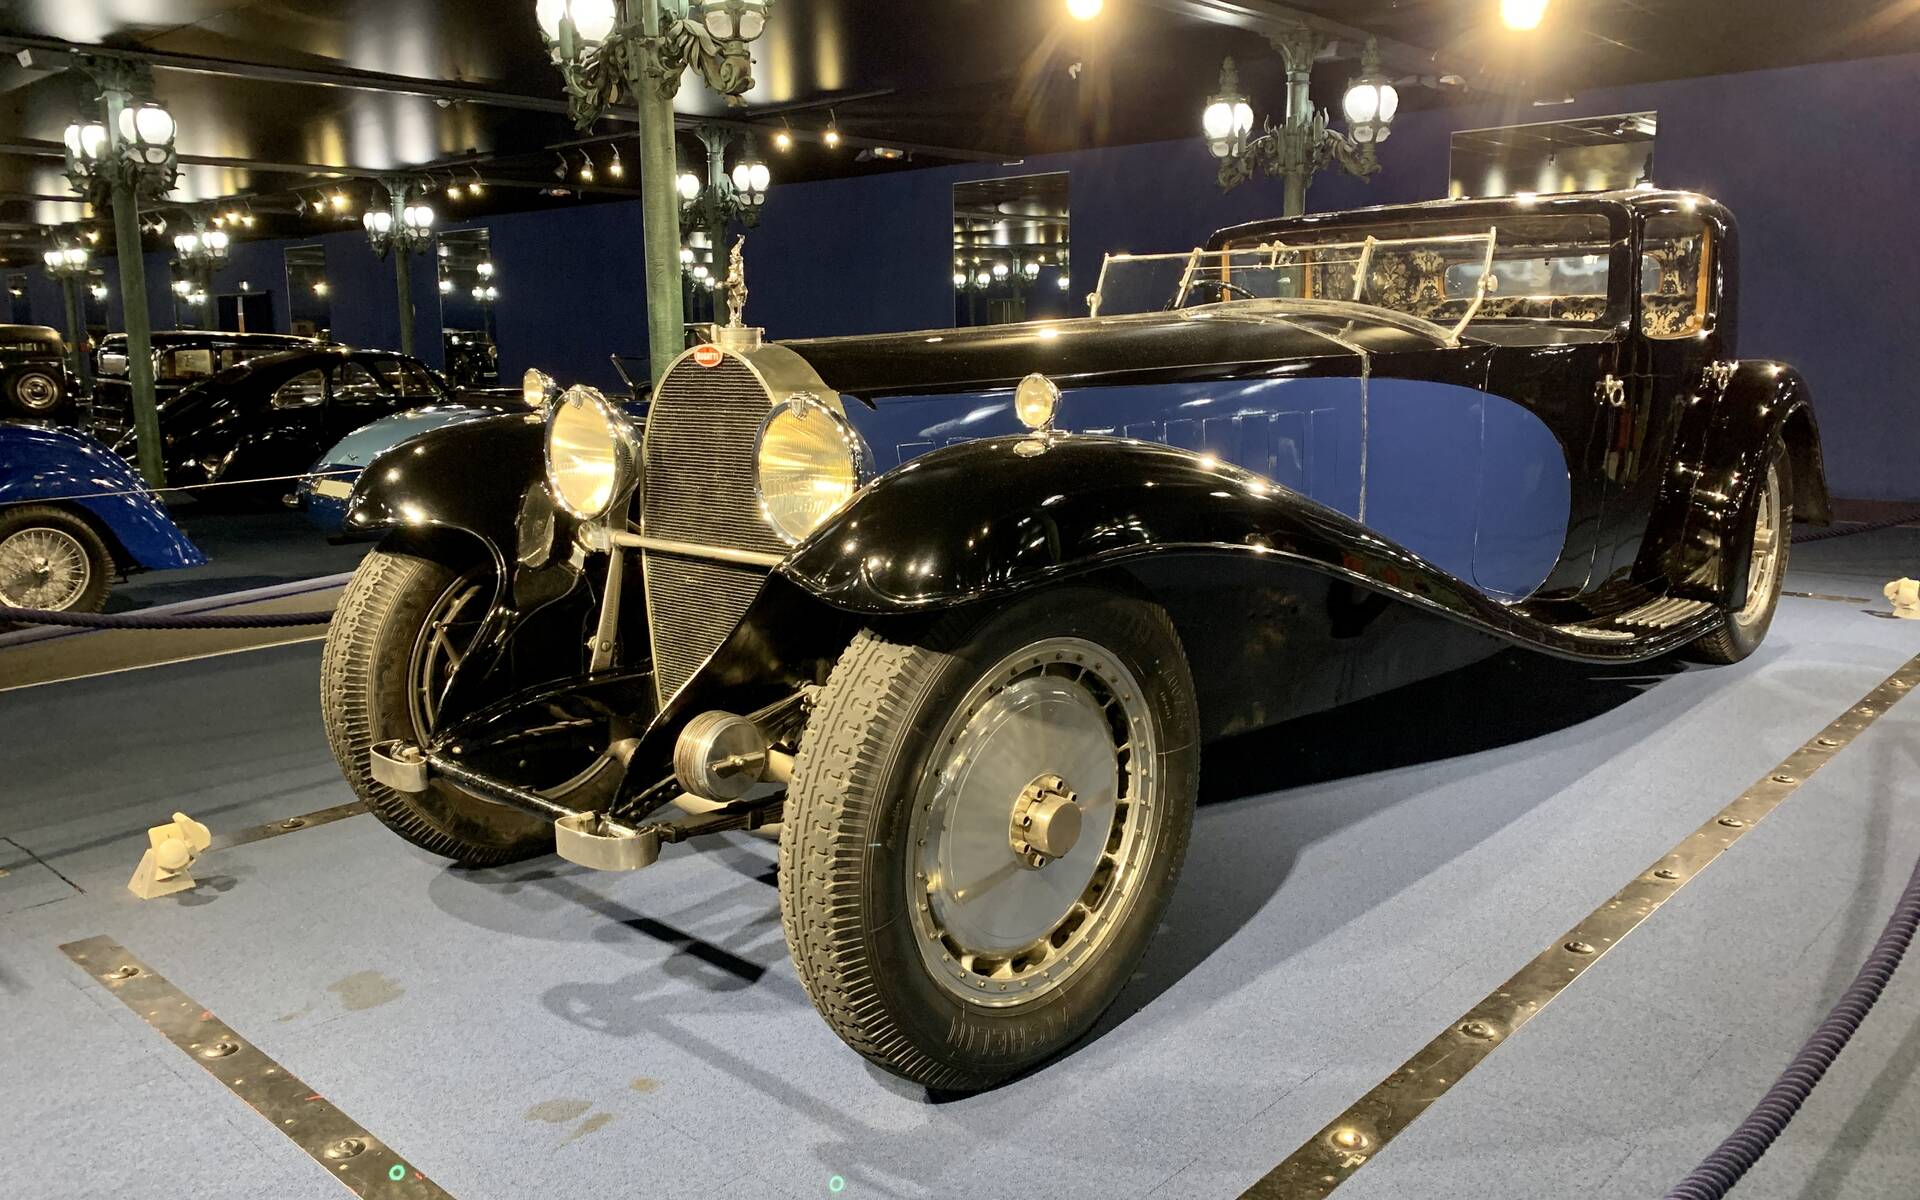 En photos : une centaine de Bugatti réunies dans un même musée 503089-en-photos-des-dizaines-de-bugatti-reunies-dans-un-meme-musee